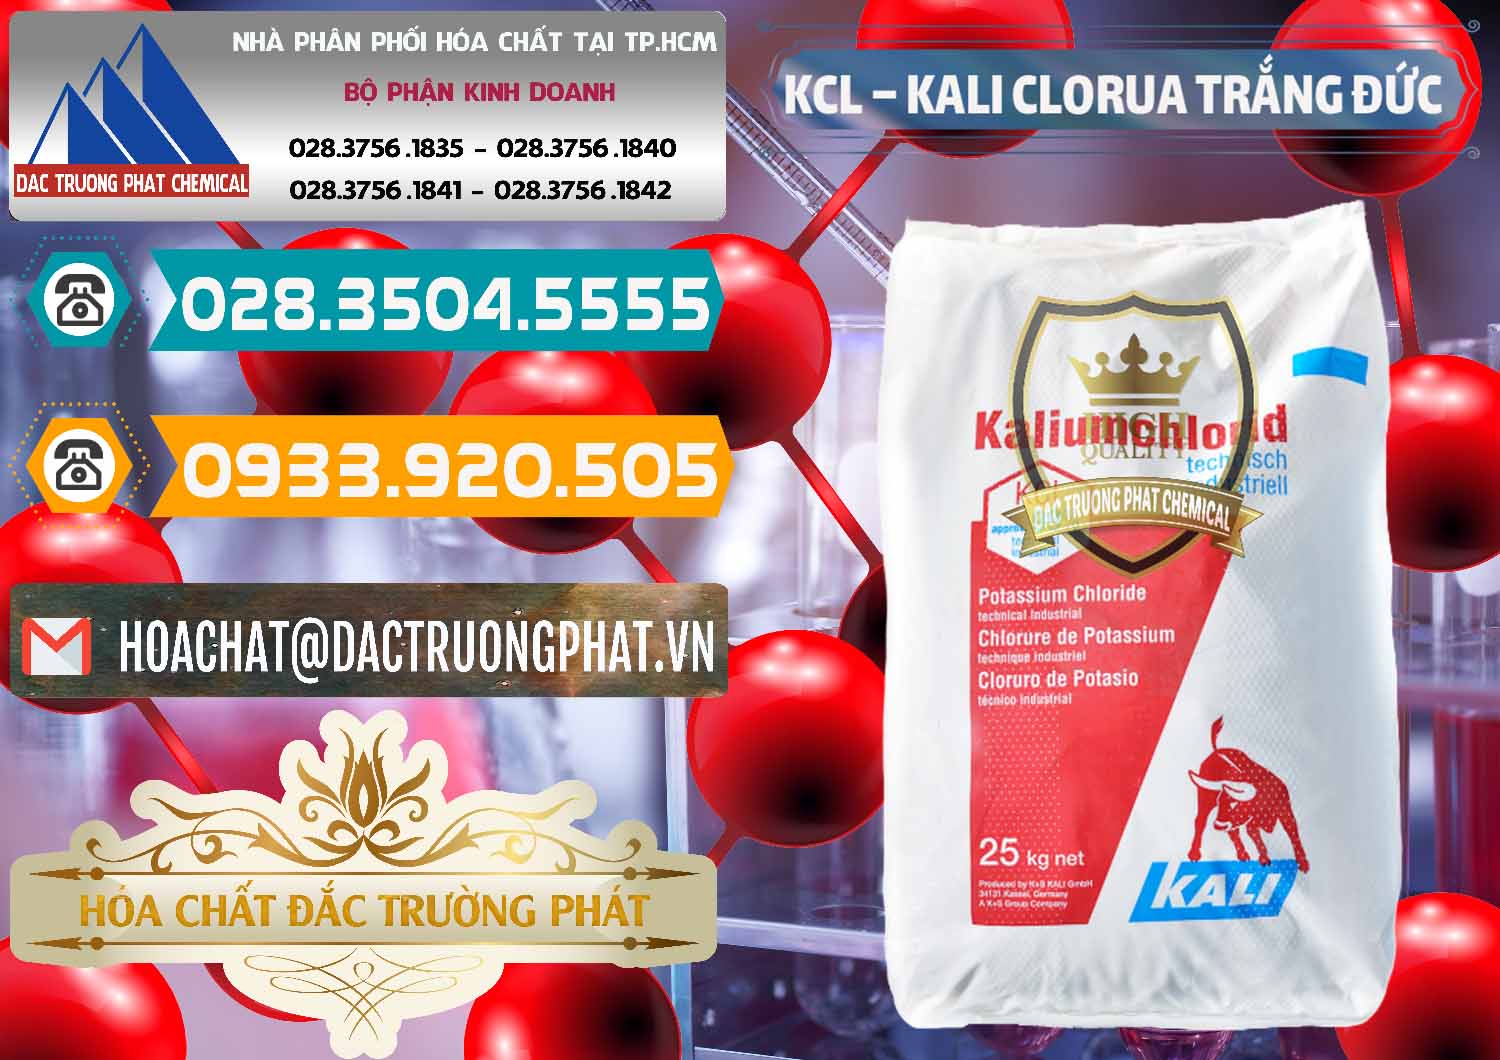 Nơi cung ứng và bán KCL – Kali Clorua Trắng Đức Germany - 0086 - Nhà cung cấp và phân phối hóa chất tại TP.HCM - congtyhoachat.vn